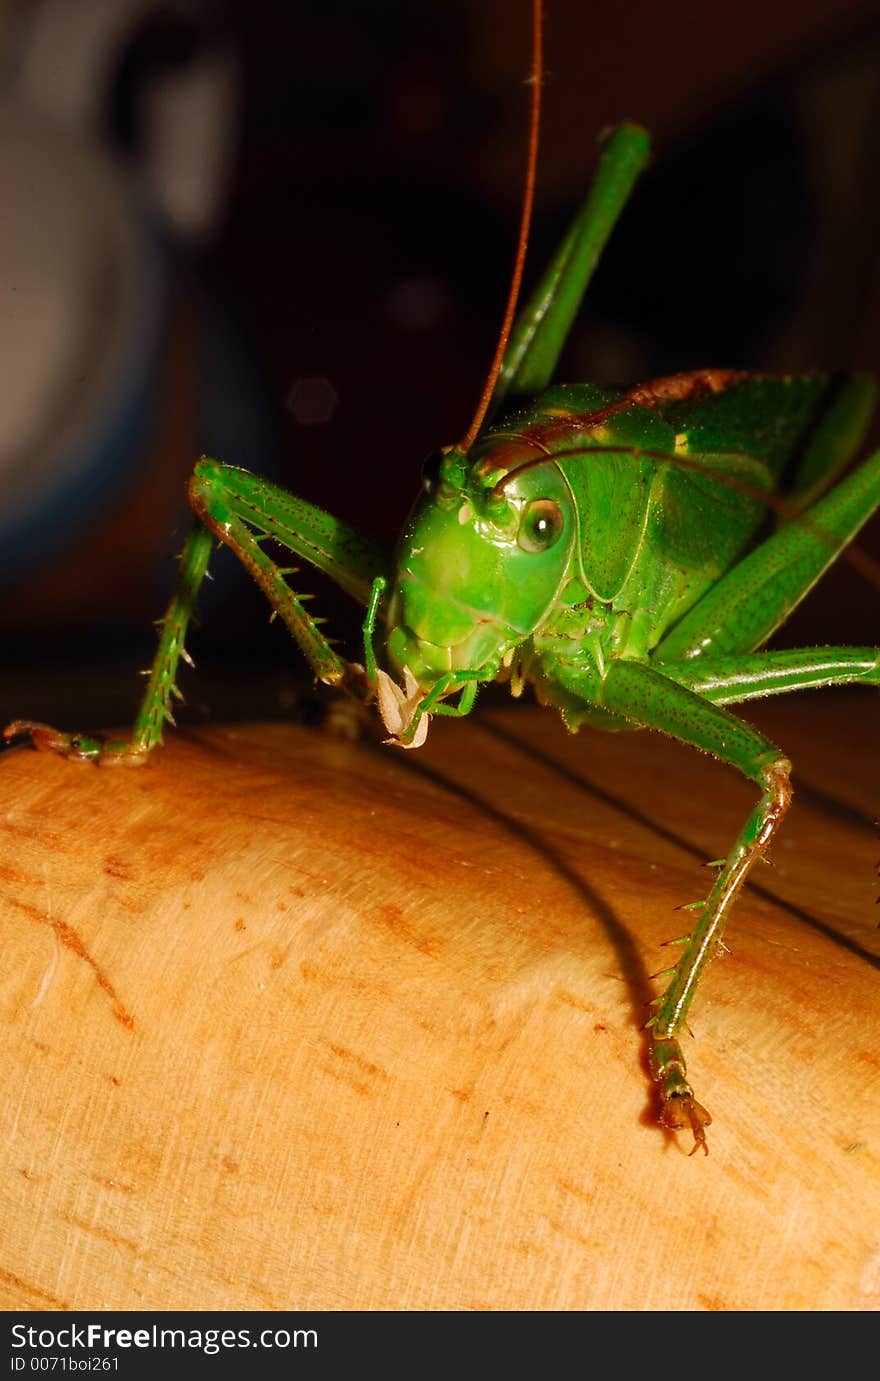 Giant green grasshopper in detail. Giant green grasshopper in detail